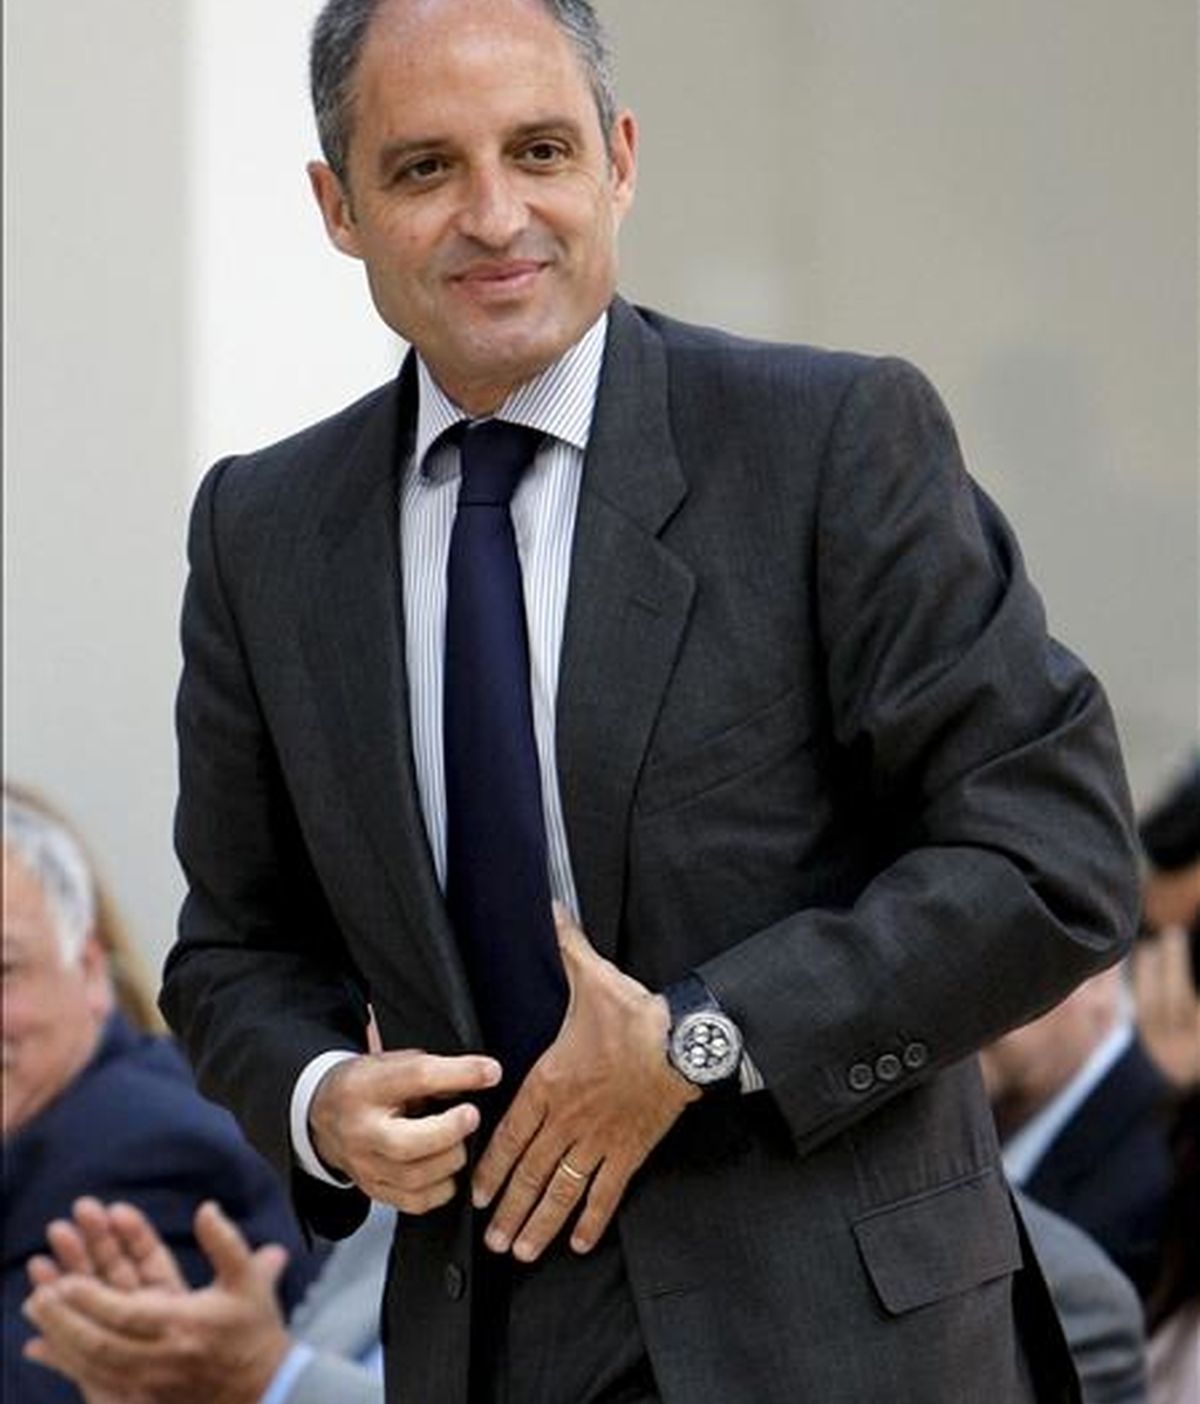 El presidente de la Generalitat, Francisco Camps, durante la inauguración de la Jornada "Figuras de Calidad de la Comunidad Valenciana y su Implantación en el Territorio". EFE